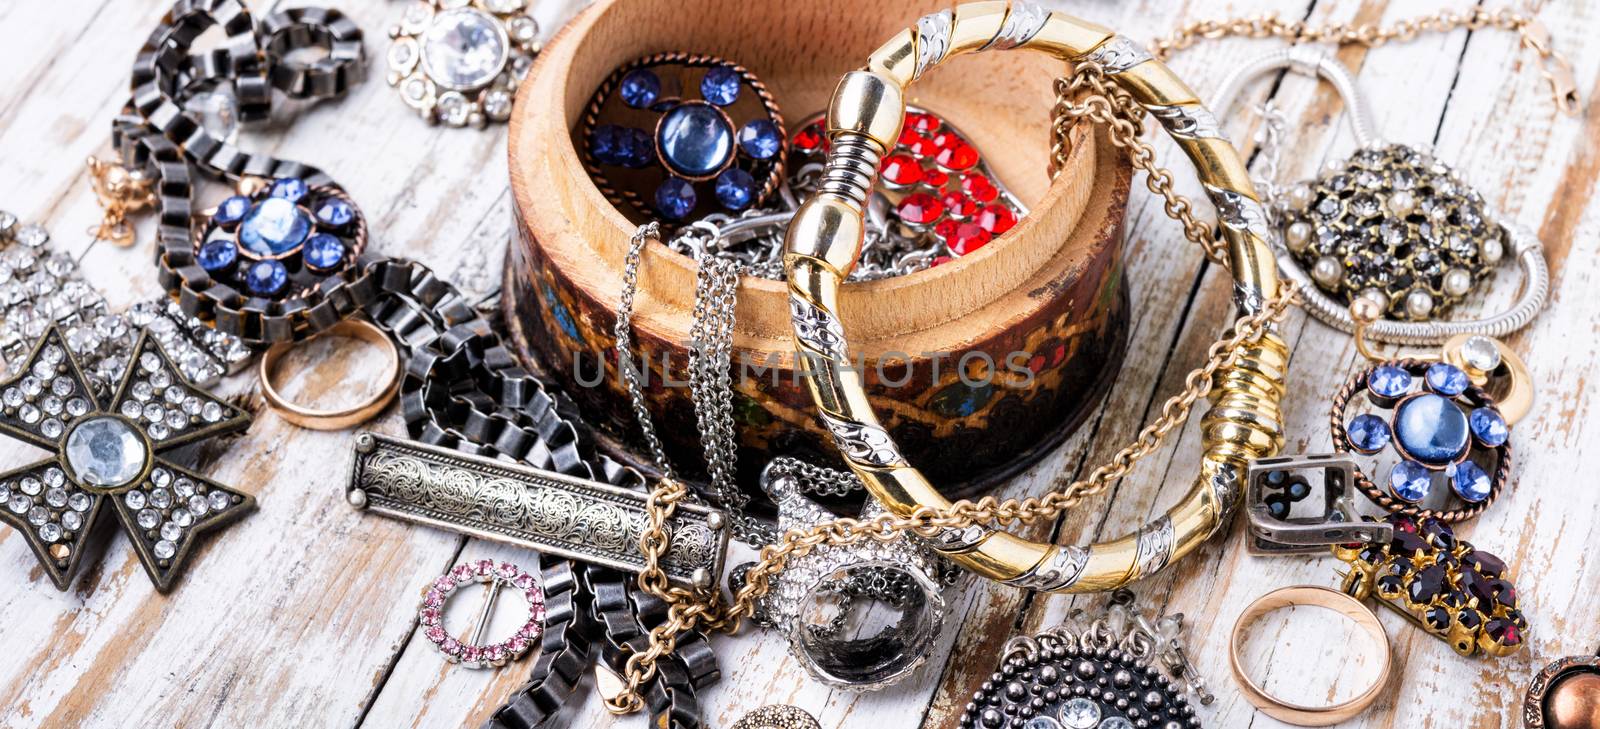 Jewelry and bijouterie. by LMykola